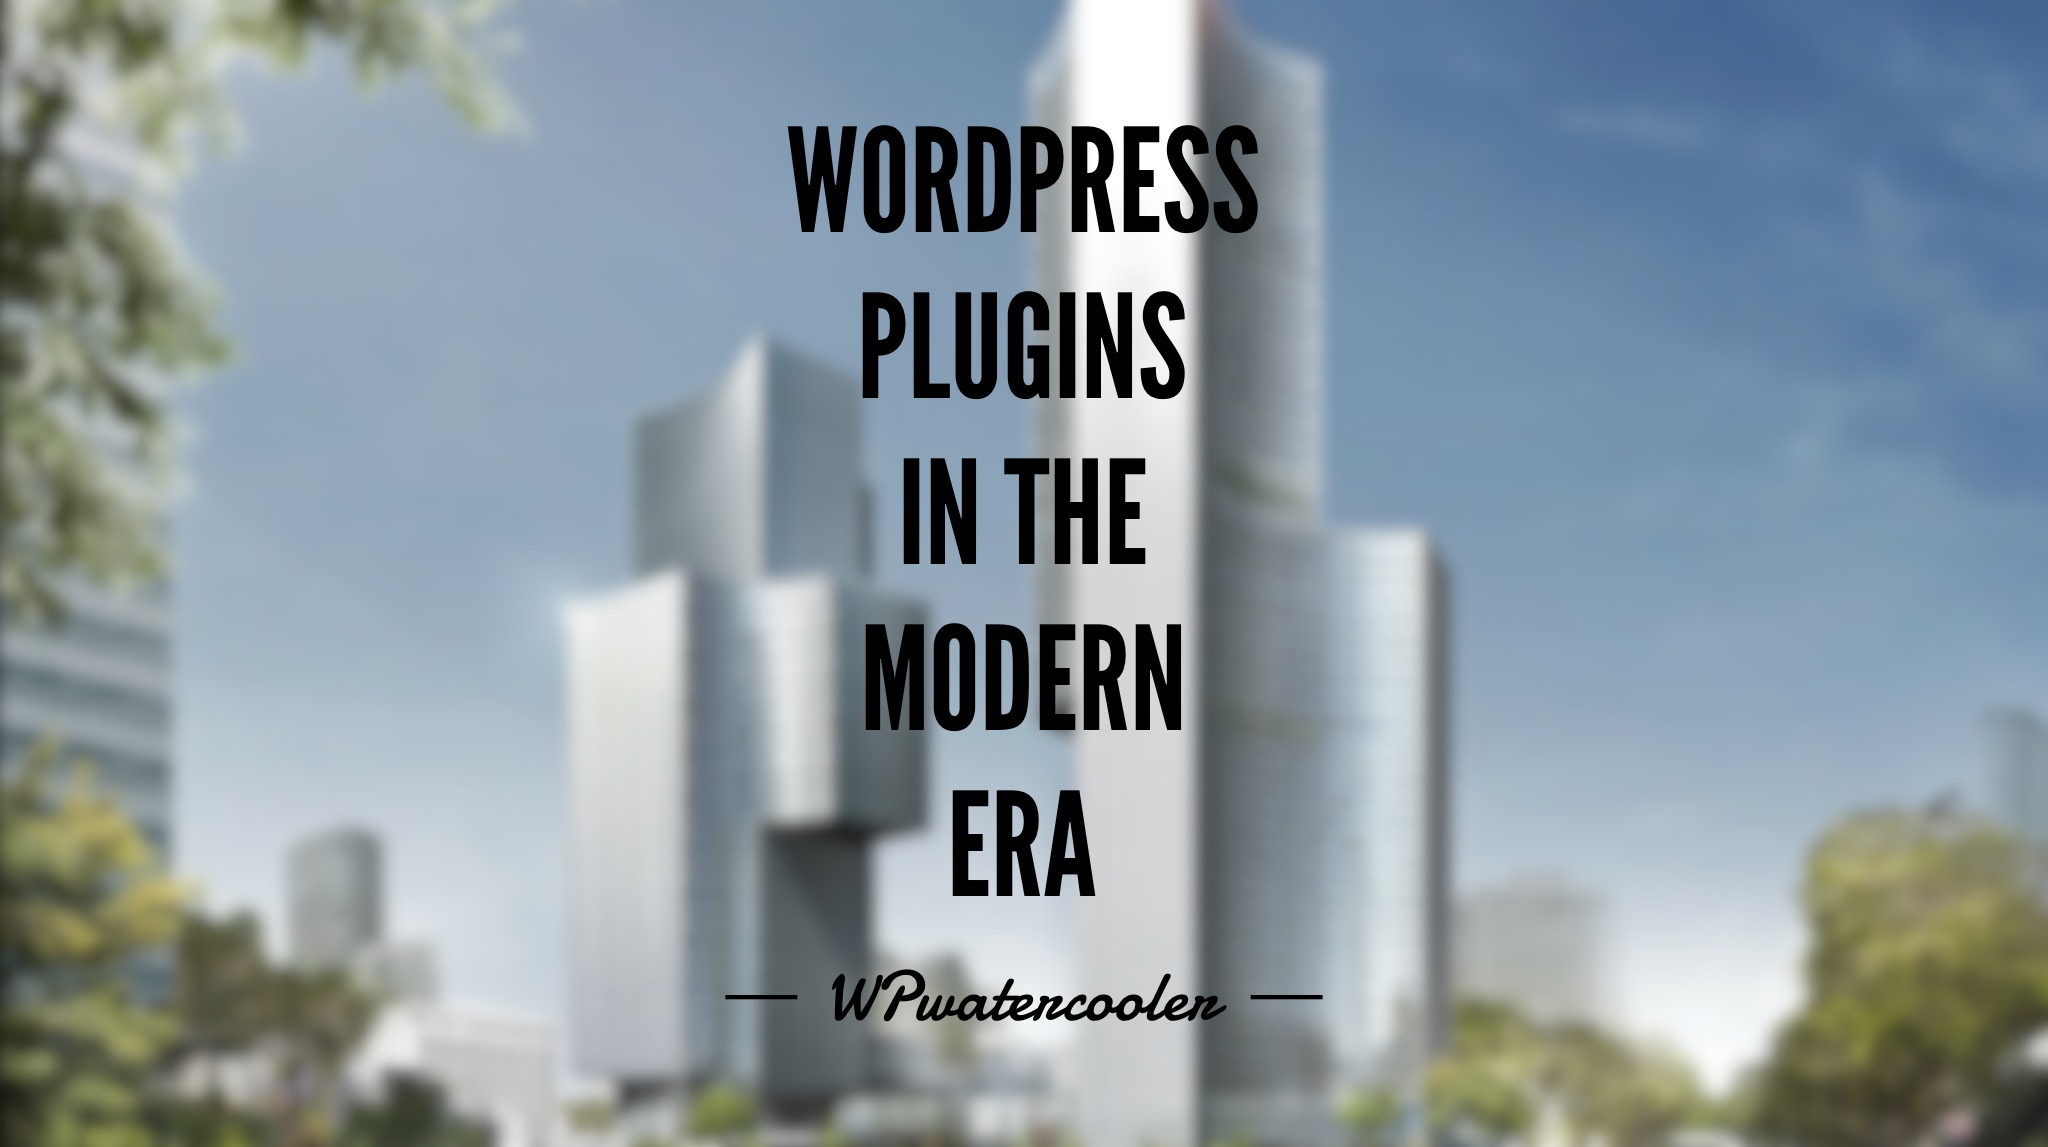 EP309 – WordPress Plugins In the Modern Era